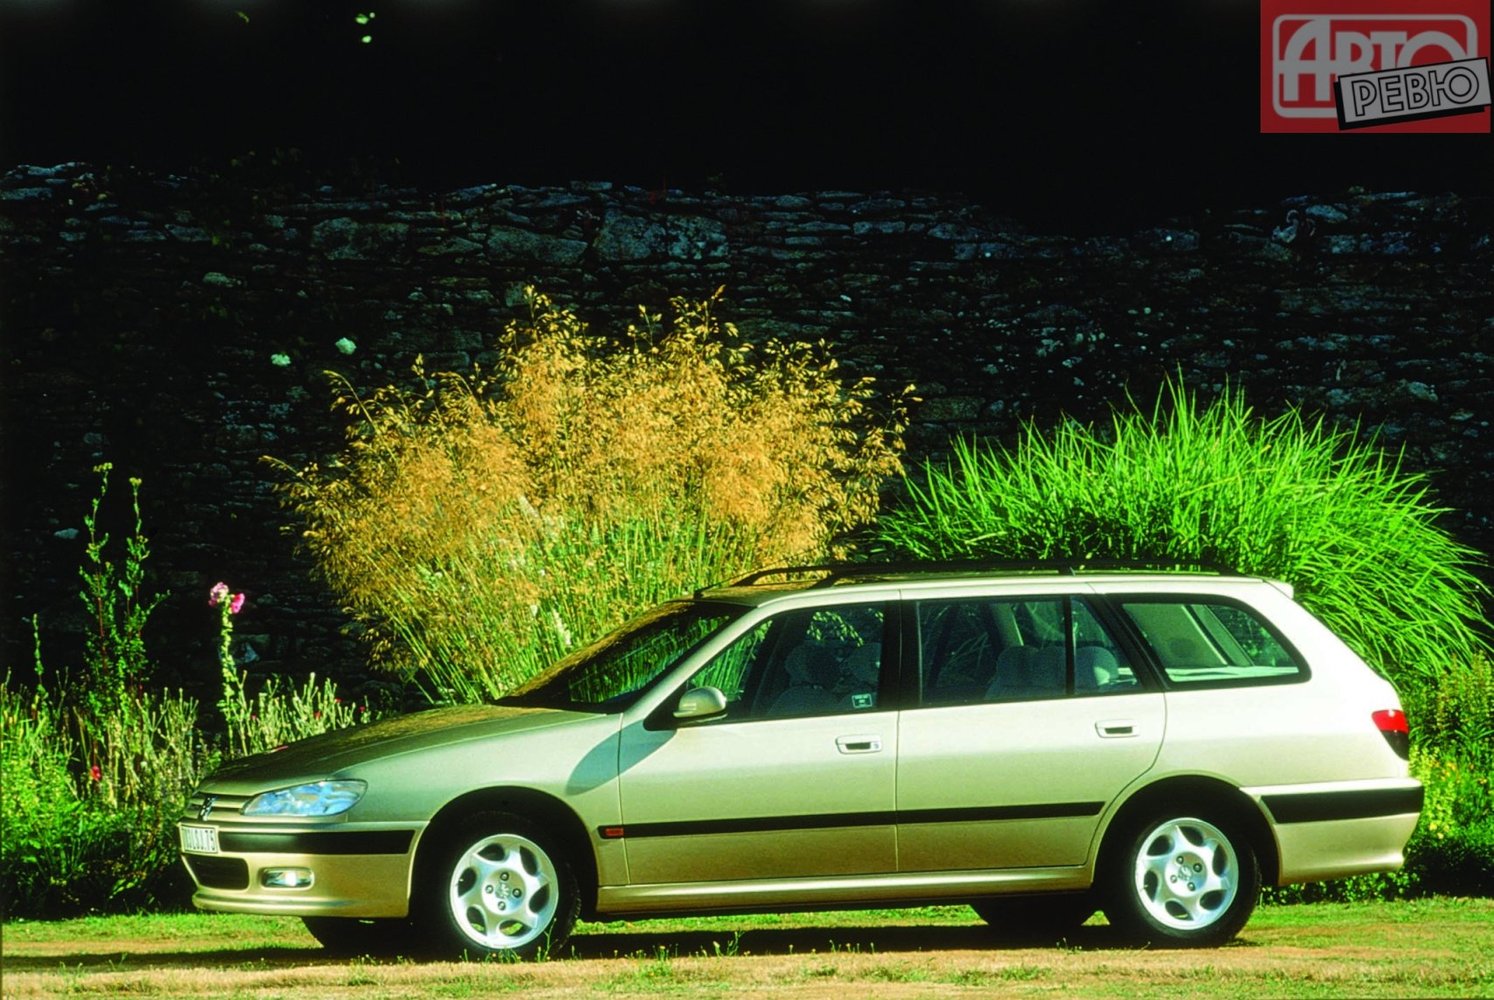 универсал Peugeot 406 1996 - 2004г выпуска модификация 1.7 AT (116 л.с.)